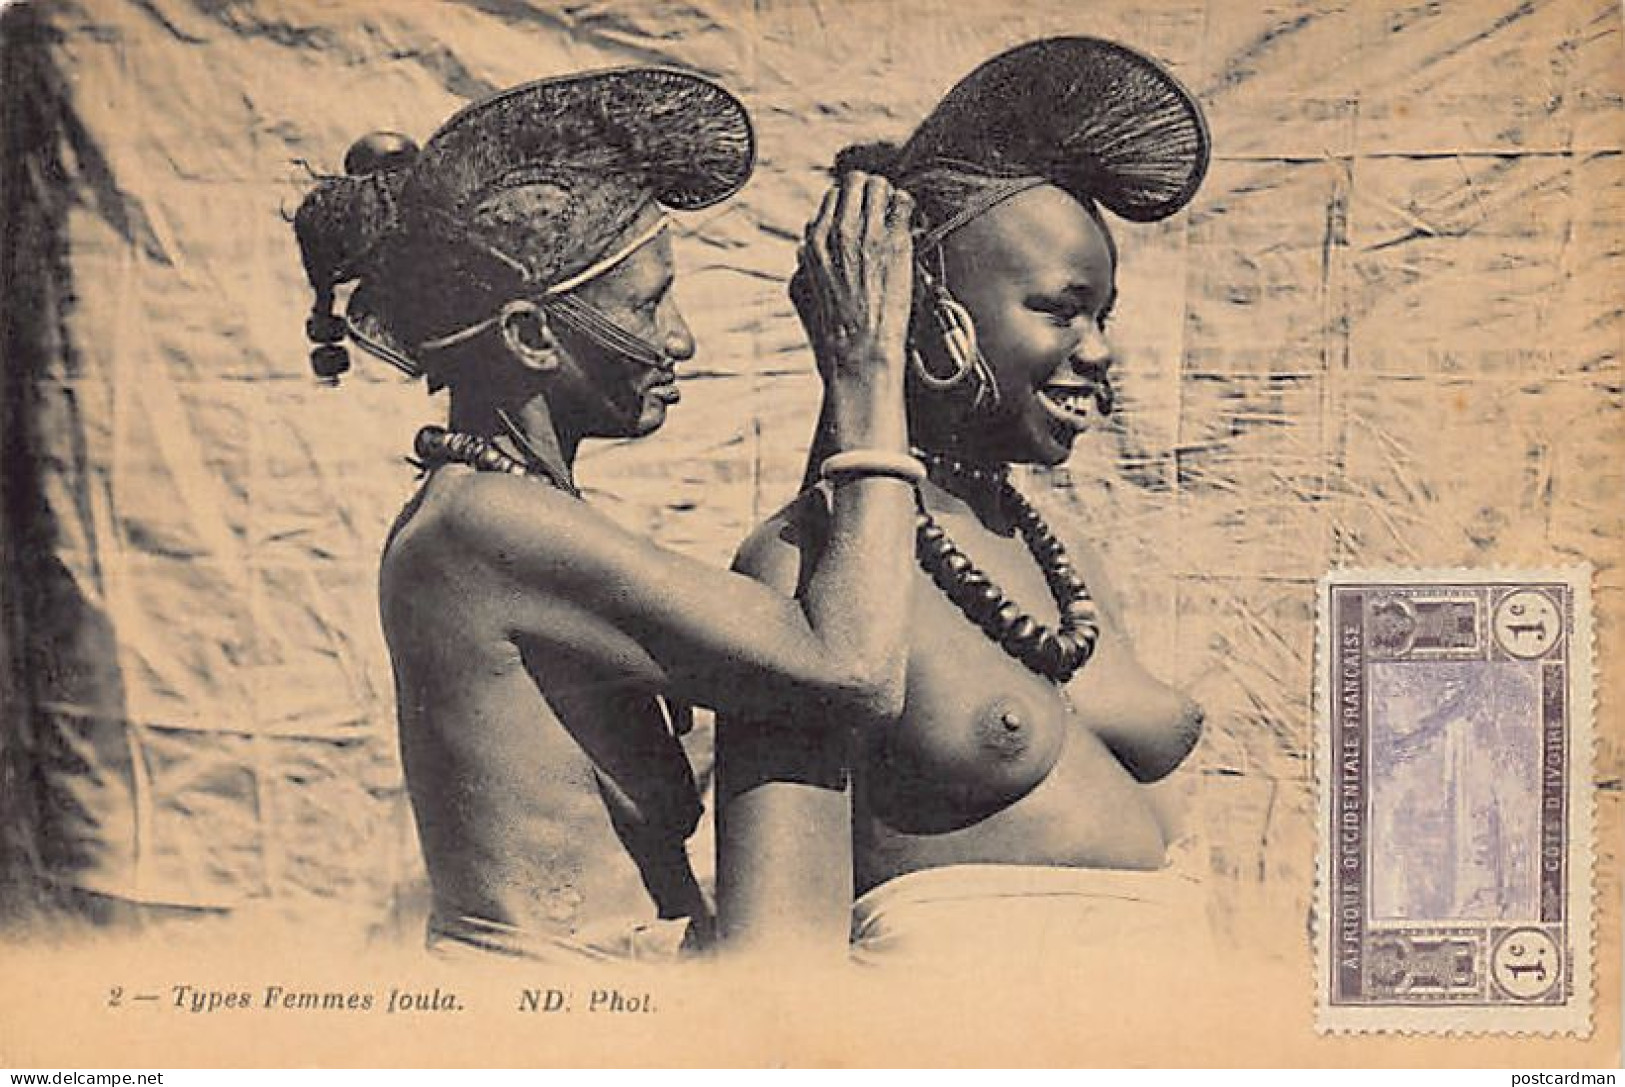 Guinée Conakry - NU ETHNIQUE - Types De Femmes Peuls - Publ. Neurdein ND Phot. 2 - Guinée